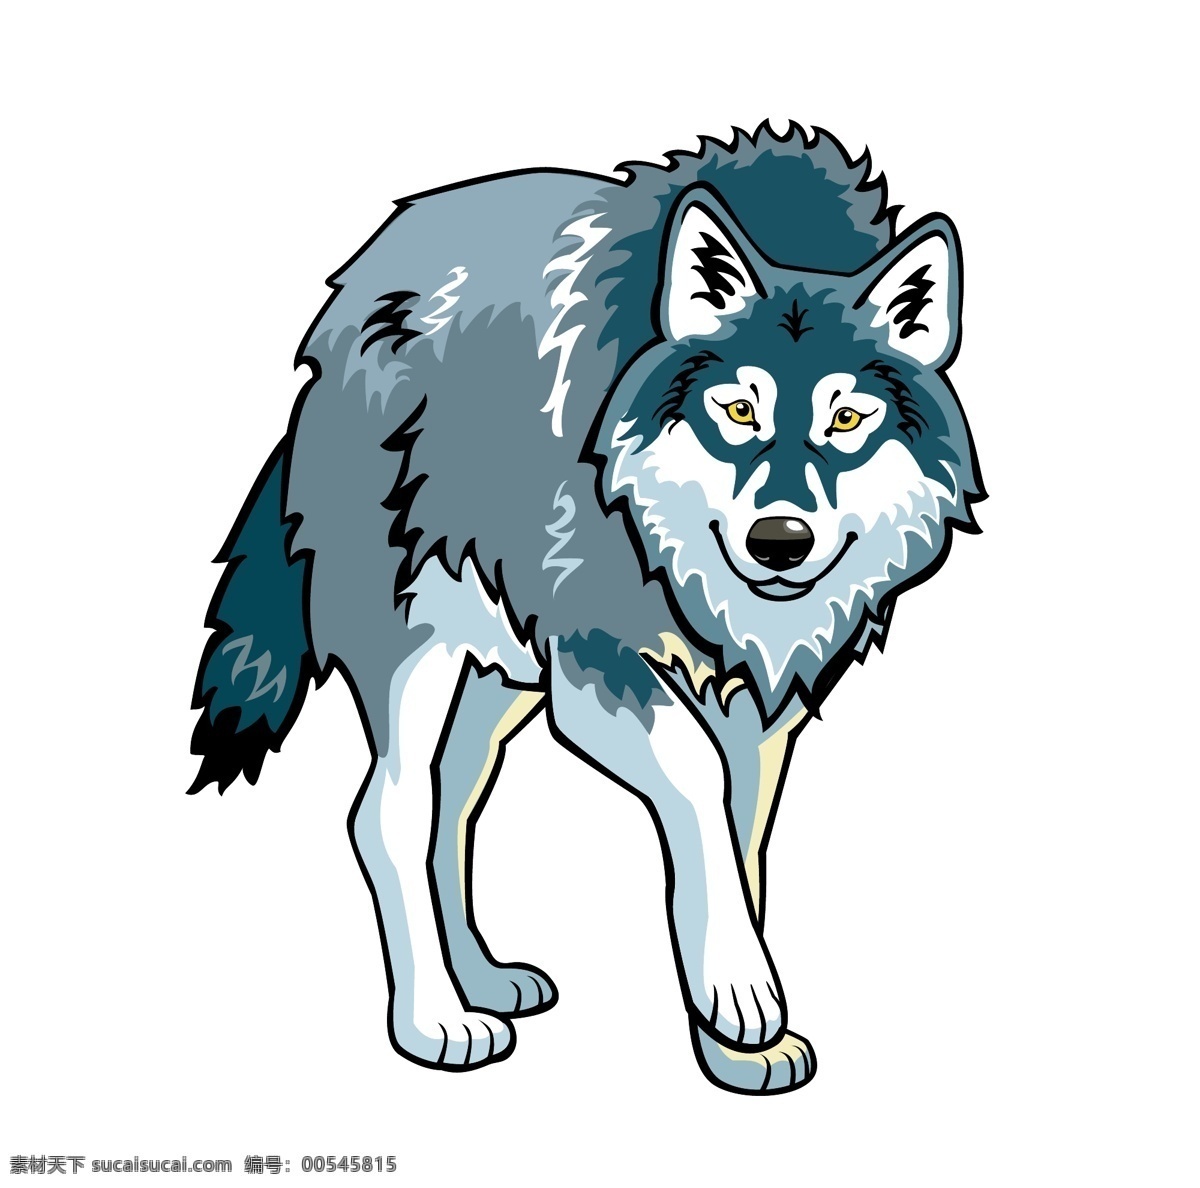 野狼 狼 苍狼 动物世界 手绘 狼狗 野生动物 哺乳动物 生物世界